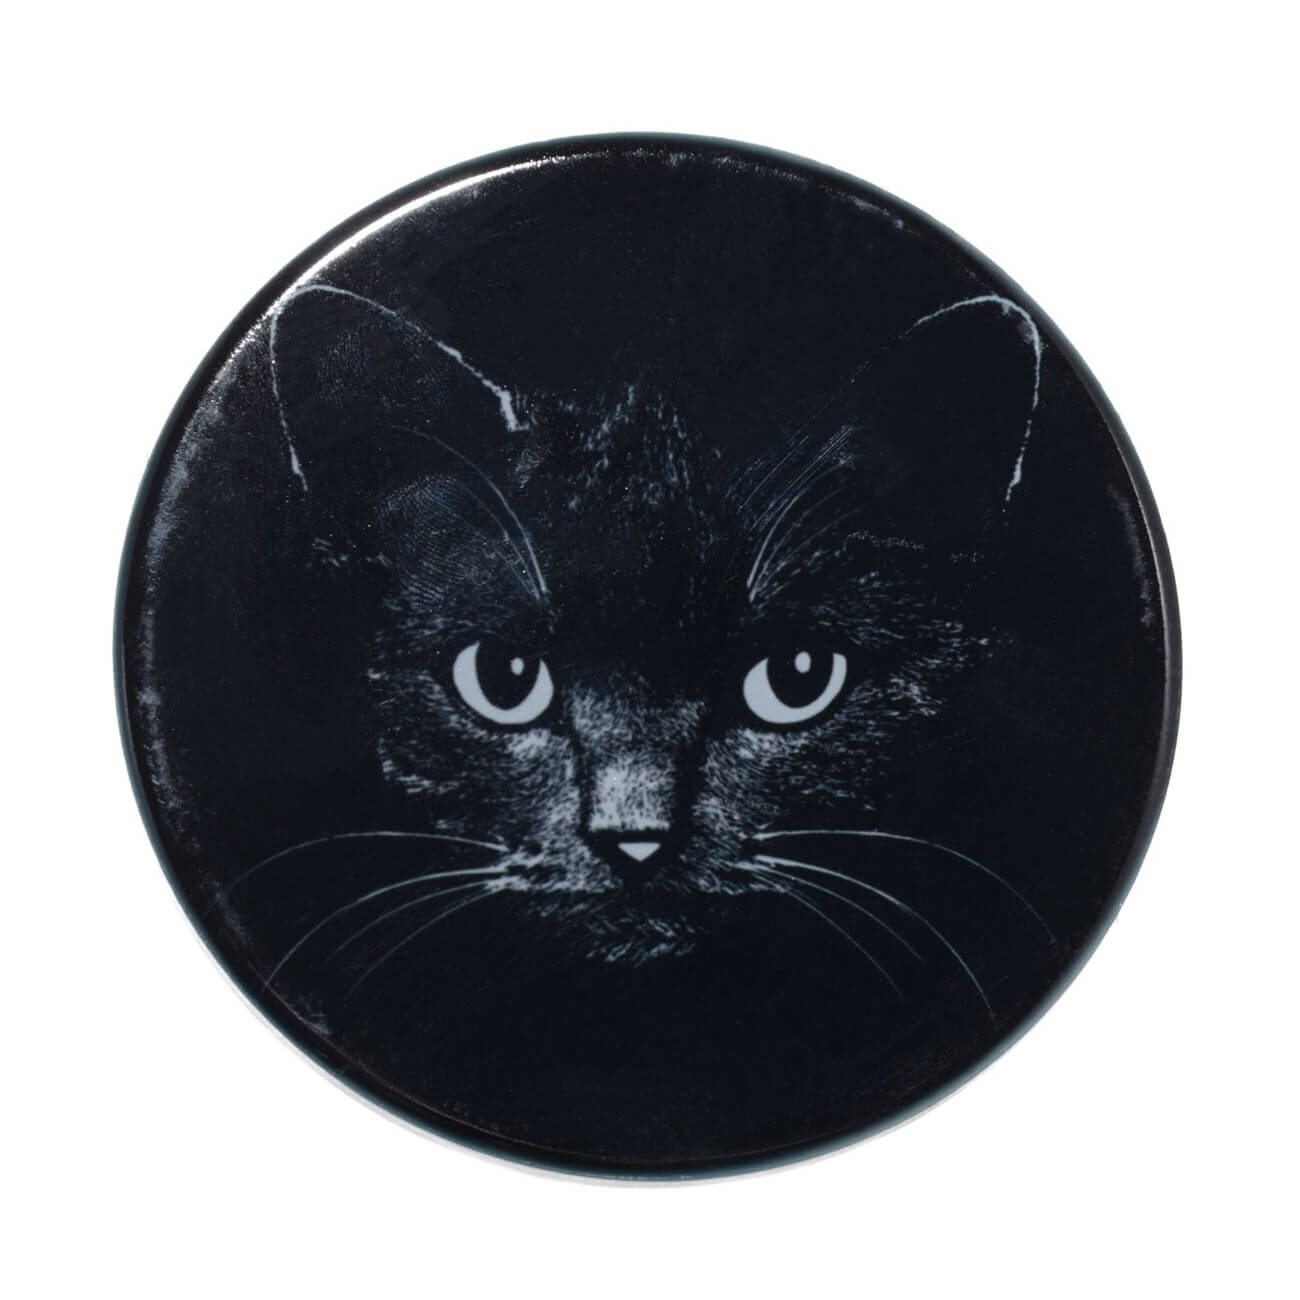 Подставка под кружку, 11x11 см, керамика/пробка, круглая, черная, Ночной кот, Cat night пробка для бутылки koziol miaou